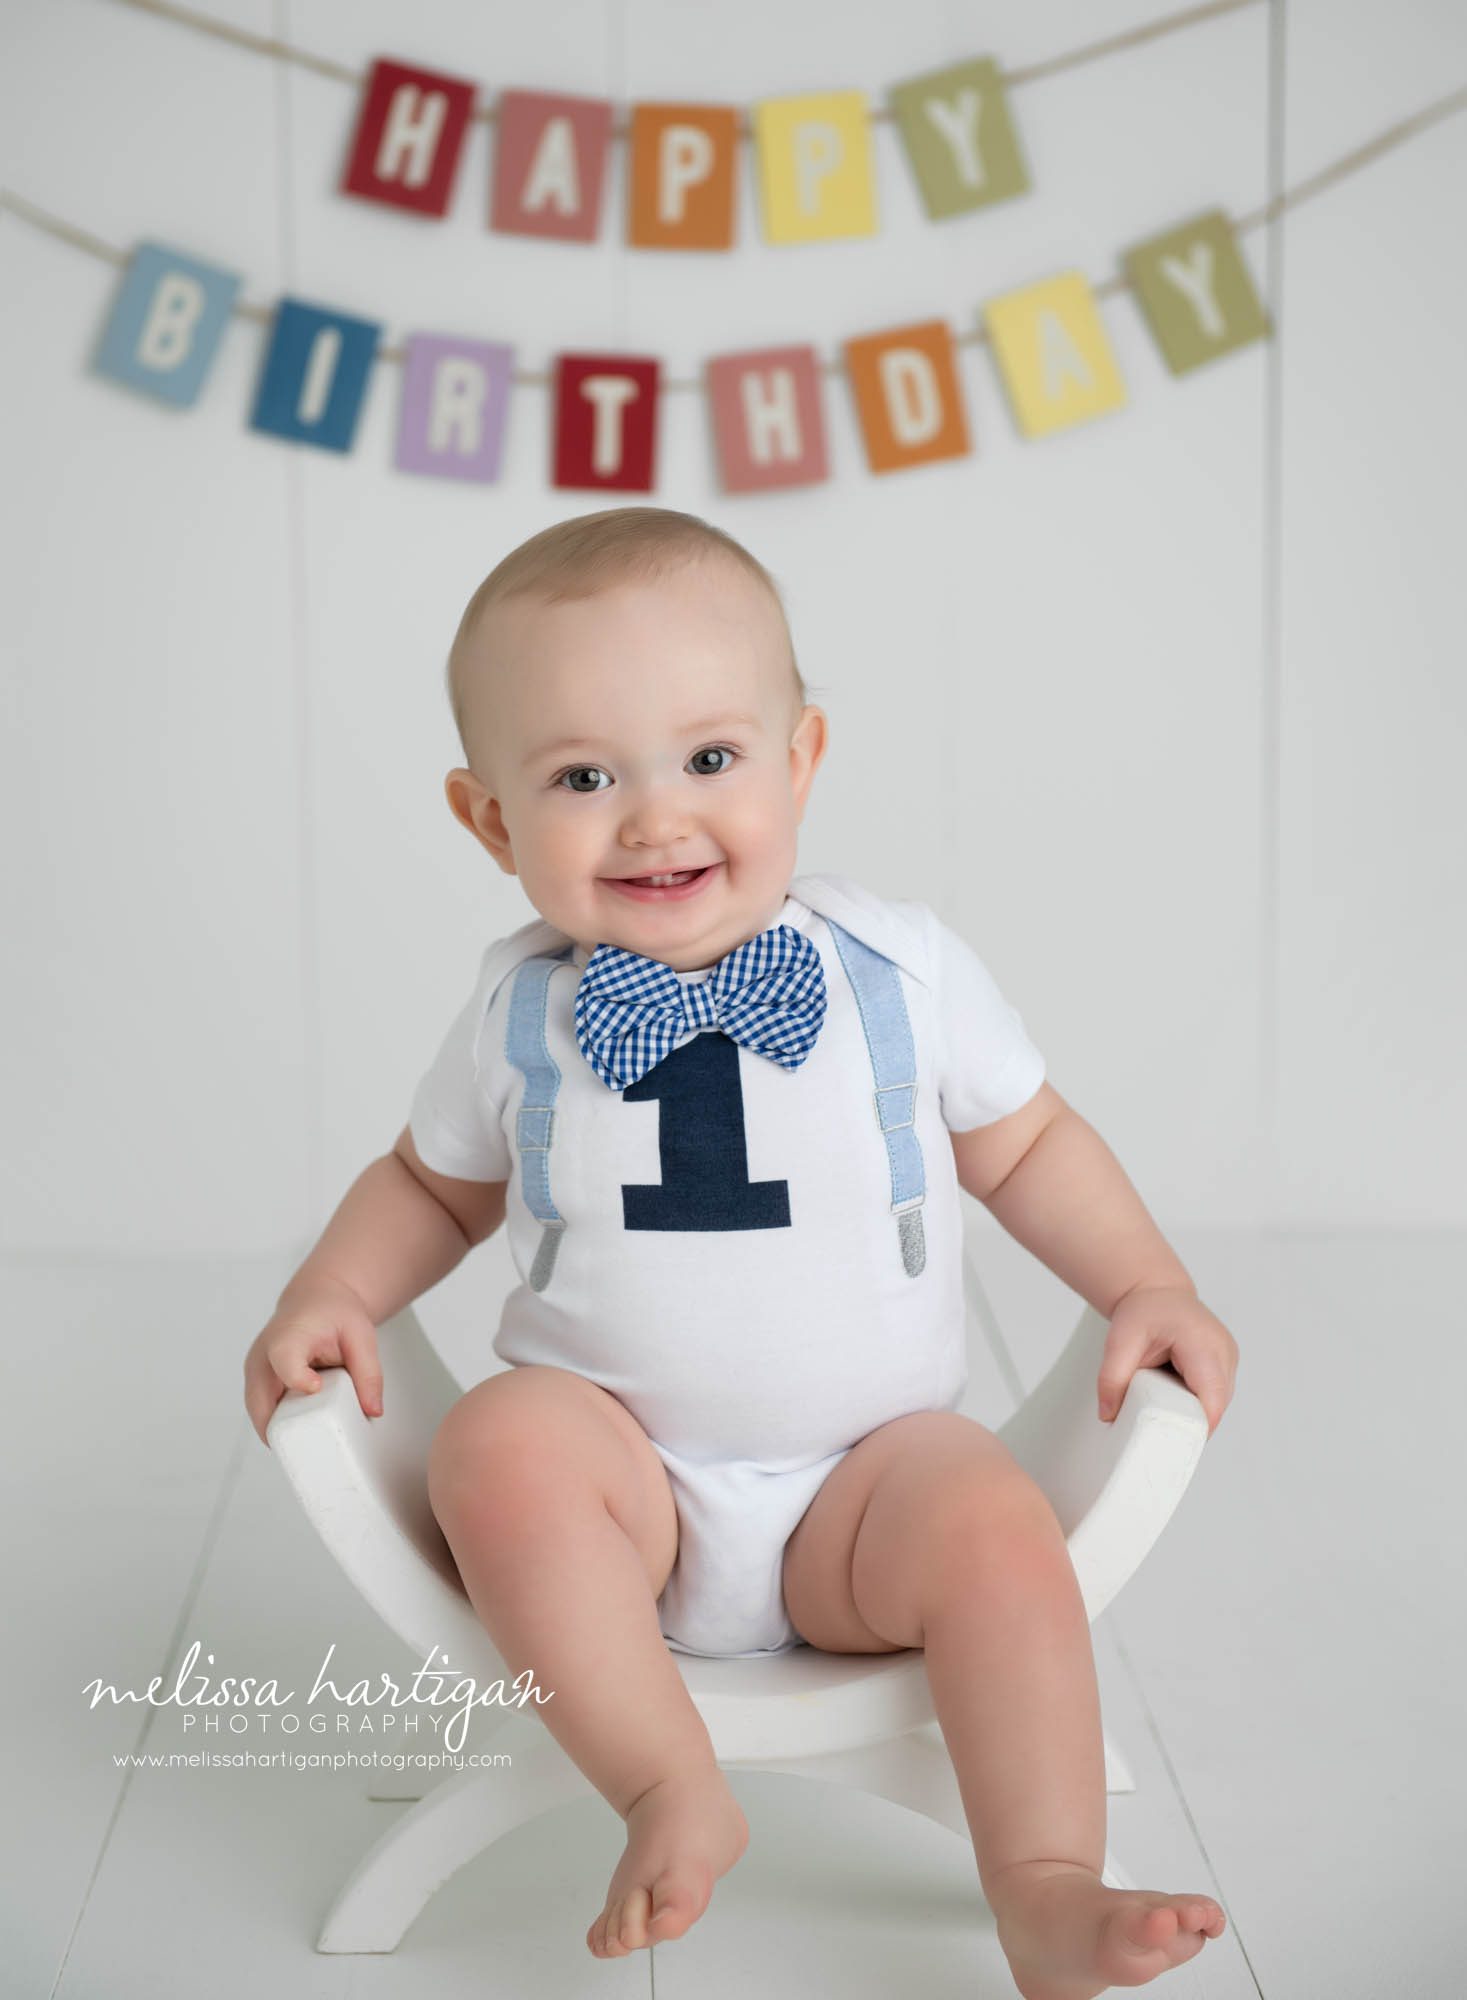 baby boy sitting on bench studio photo session happy birthday banner